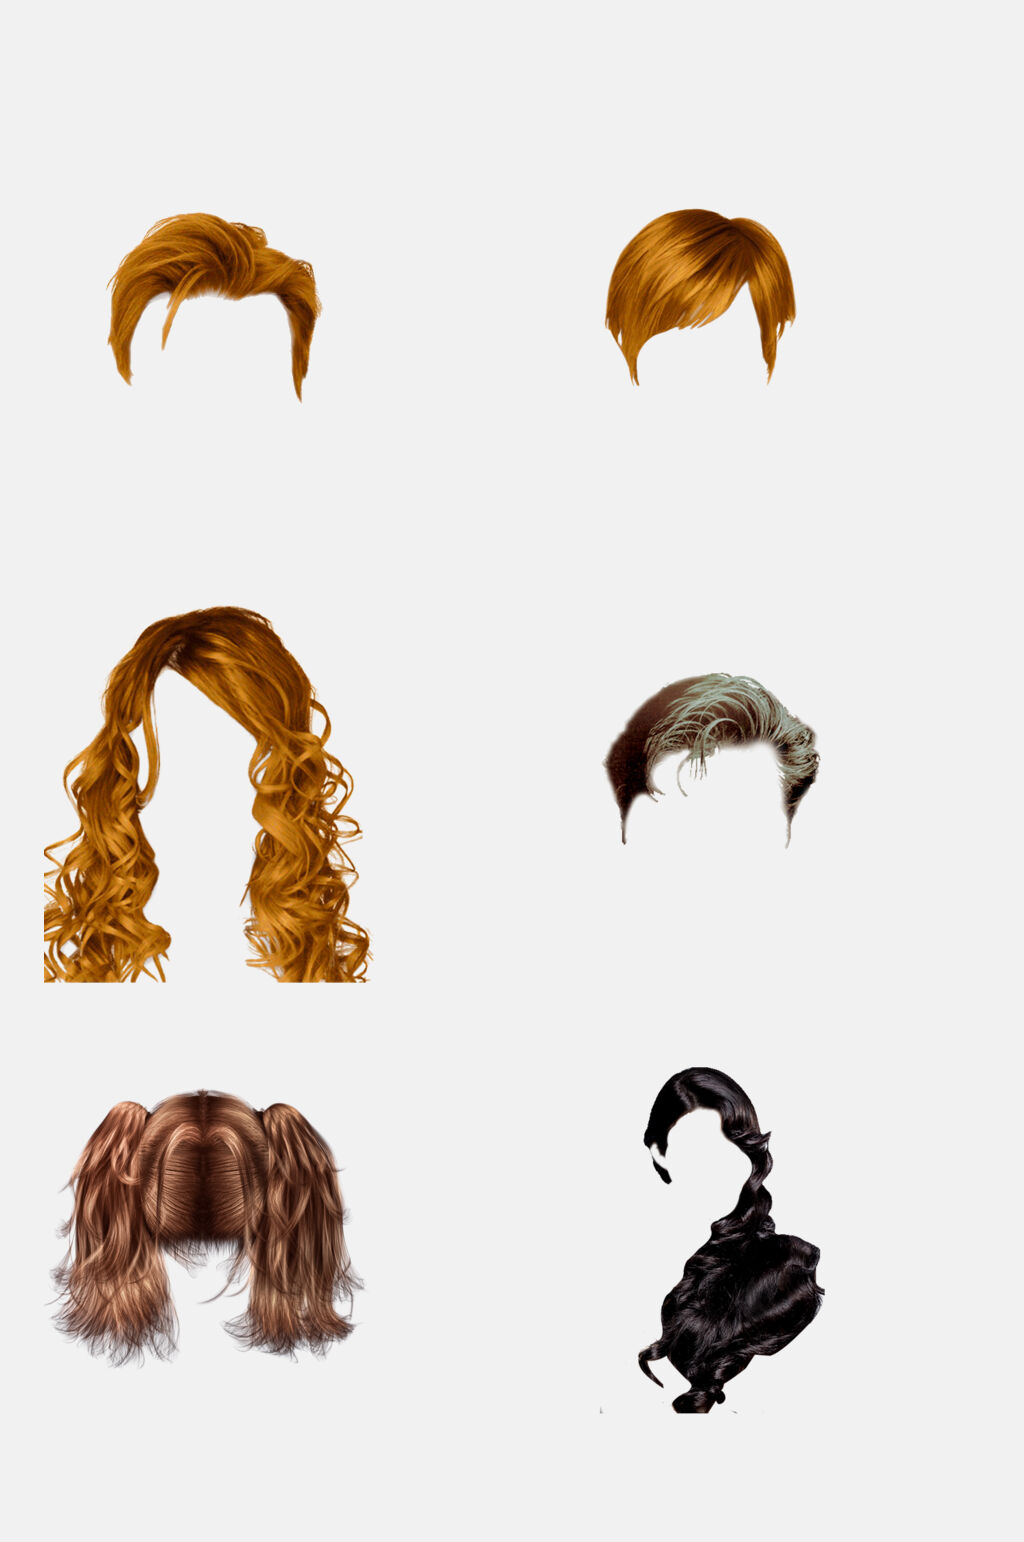 复古潮流上海发型头发免抠素材立即下载复古女郎发型矢量素材正版作品